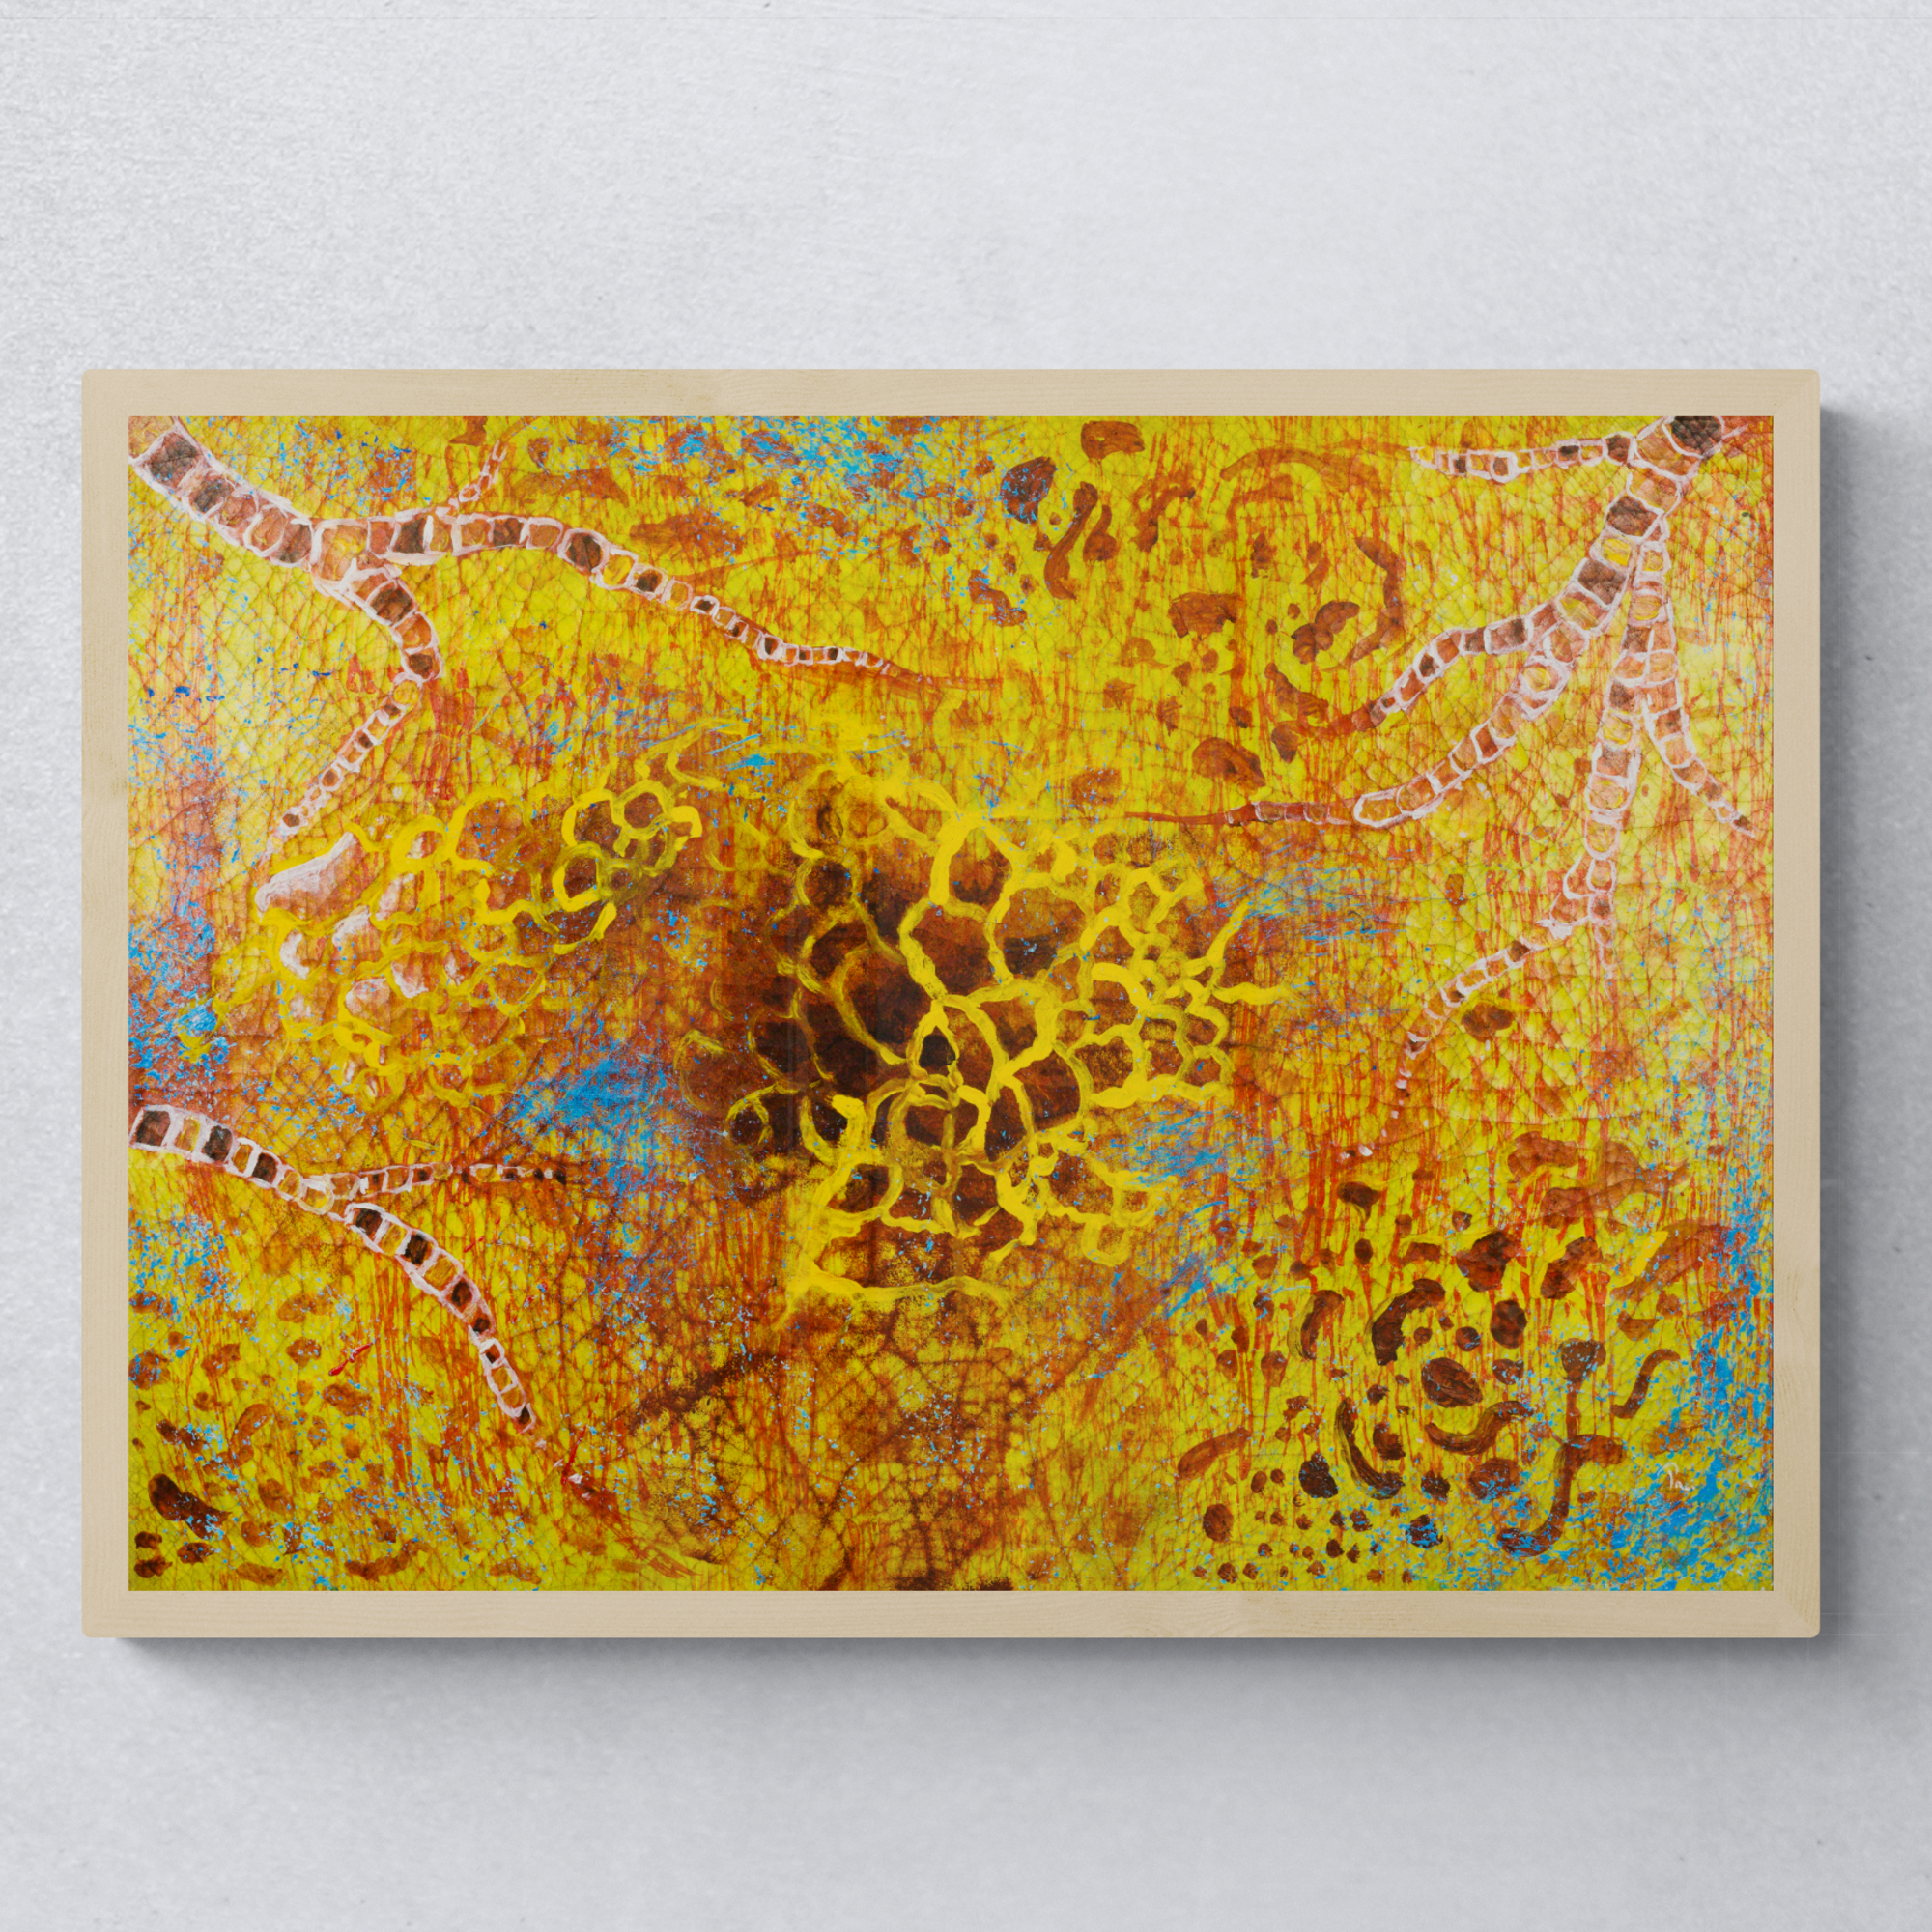 Astratto ispirato alla natura colore giallo - In Giallo. 50x70cm